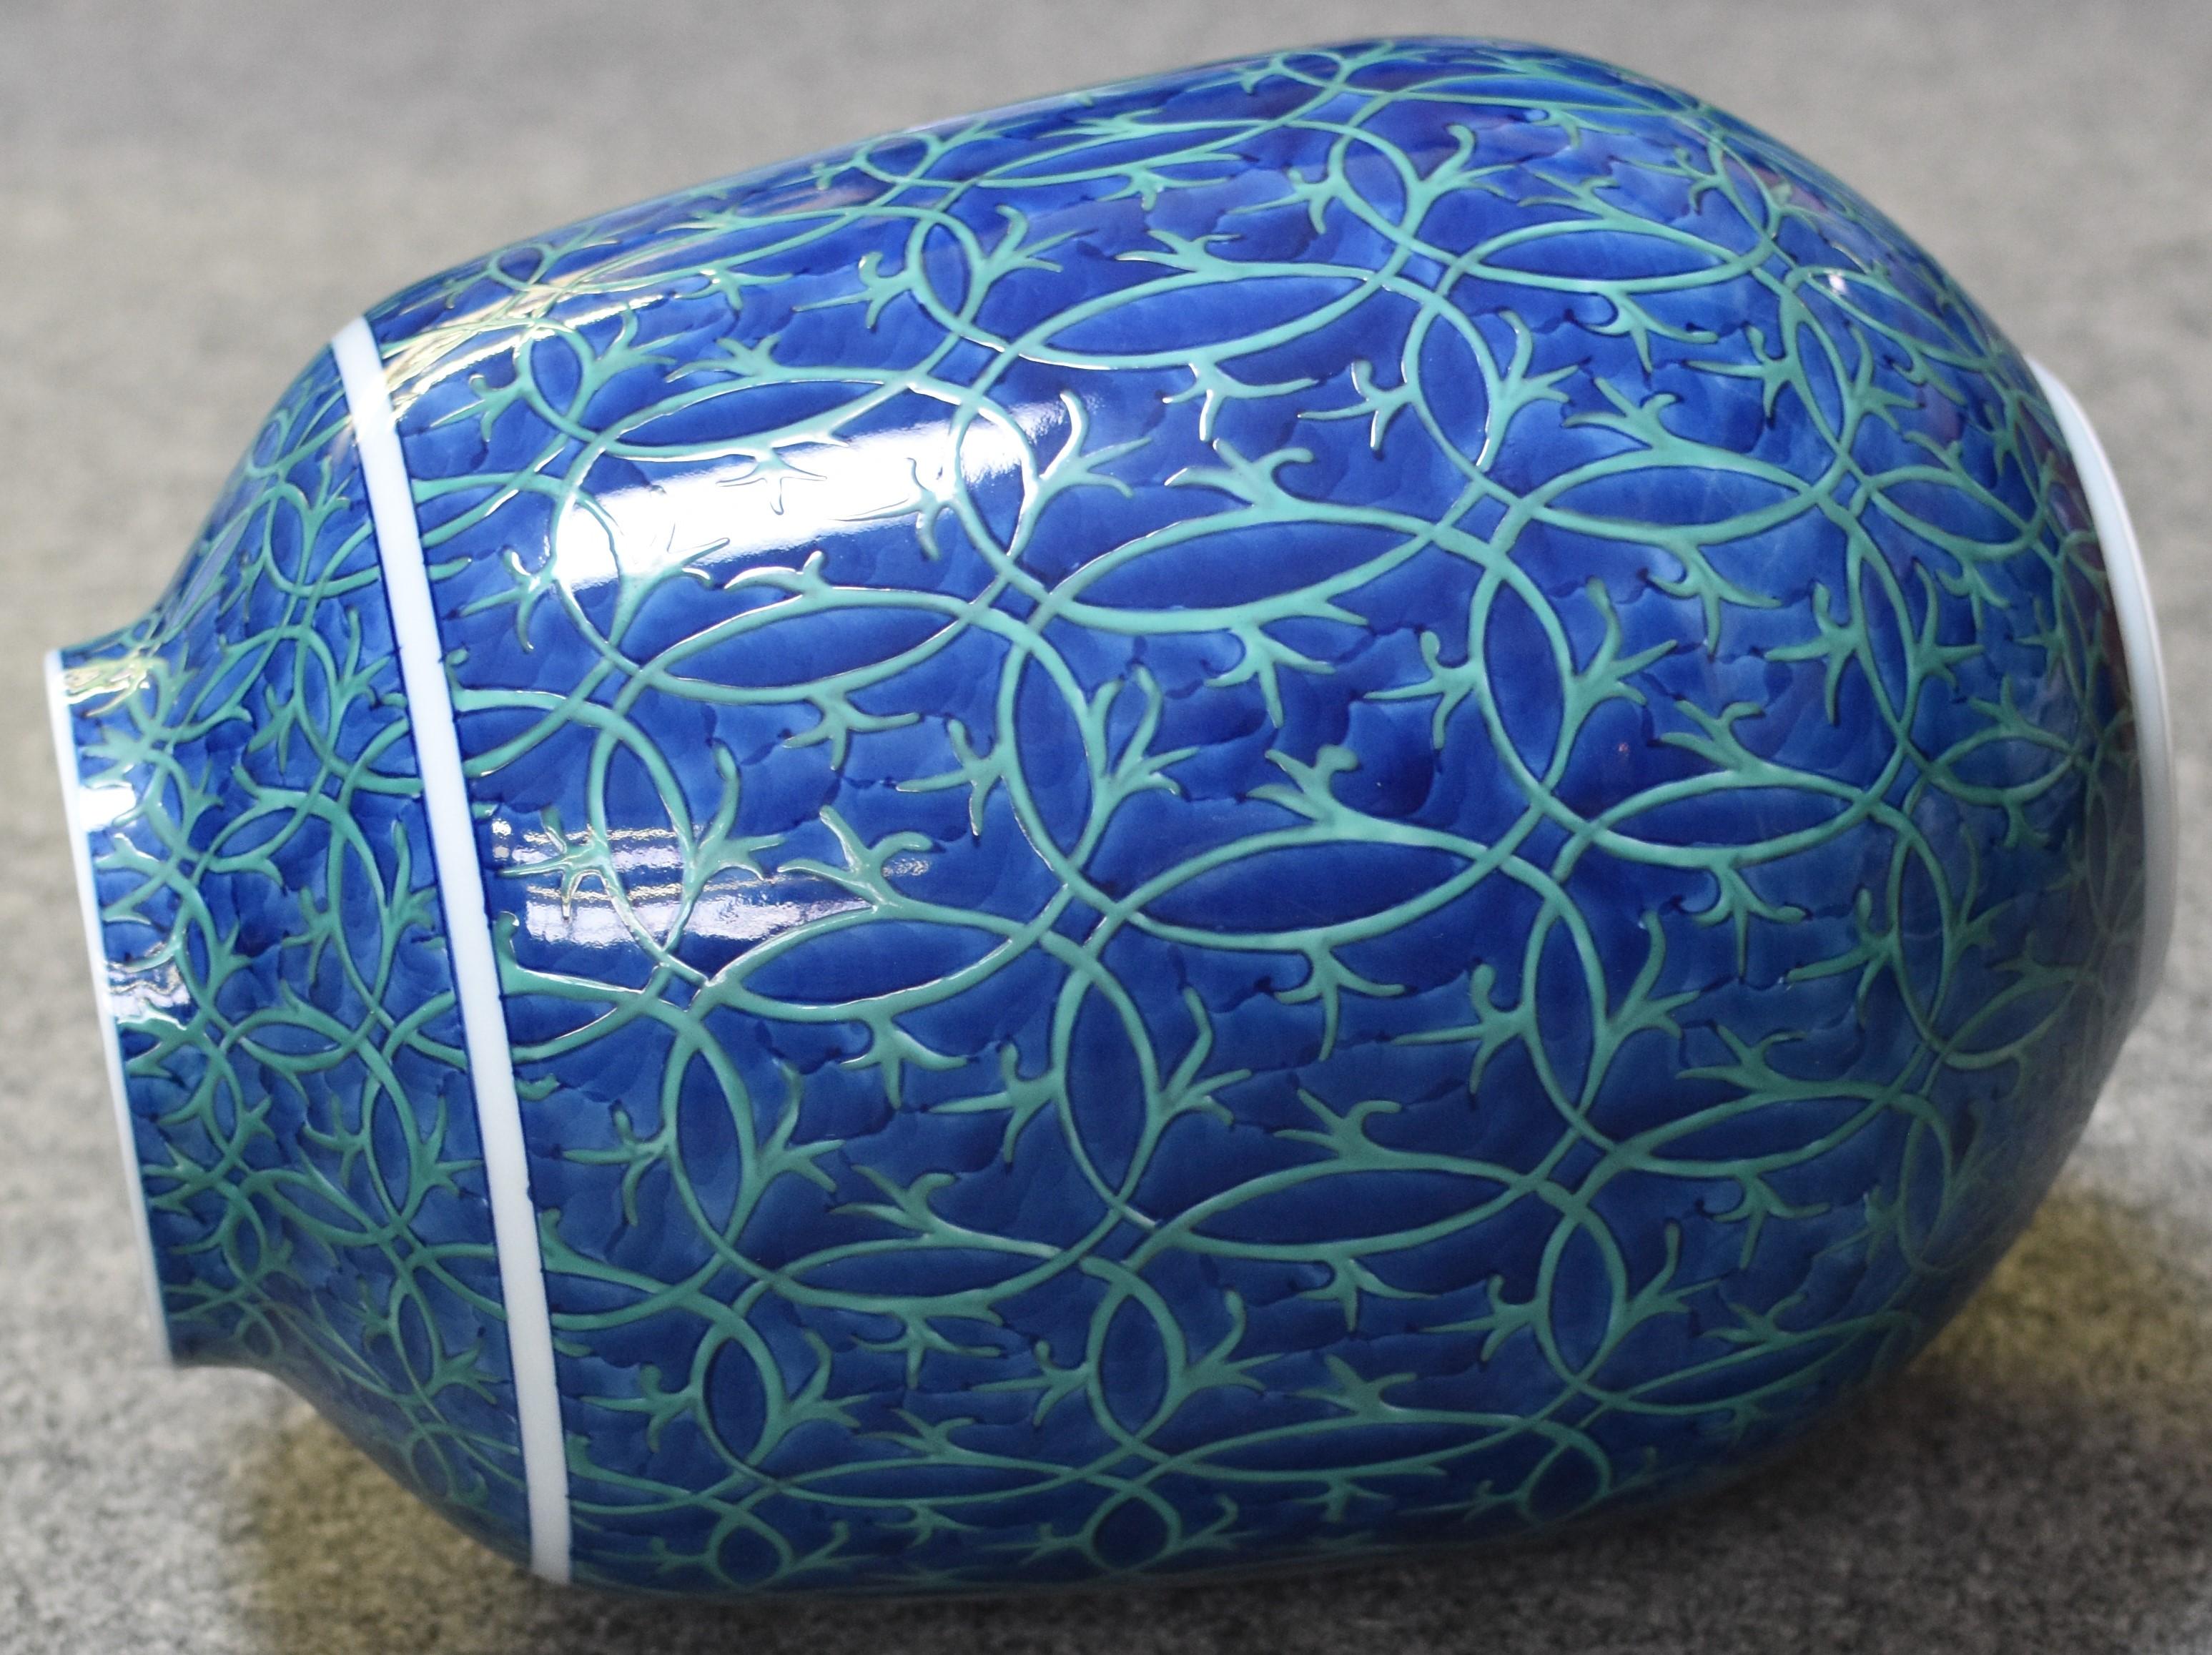 Einzigartige zeitgenössische japanische signierte dekorative Porzellanvase, aufwendig handbemalt in tiefem Blau und Grün auf einem wunderschön geformten Körper, ein Meisterwerk des weithin anerkannten preisgekrönten Porzellanmeisters der dritten